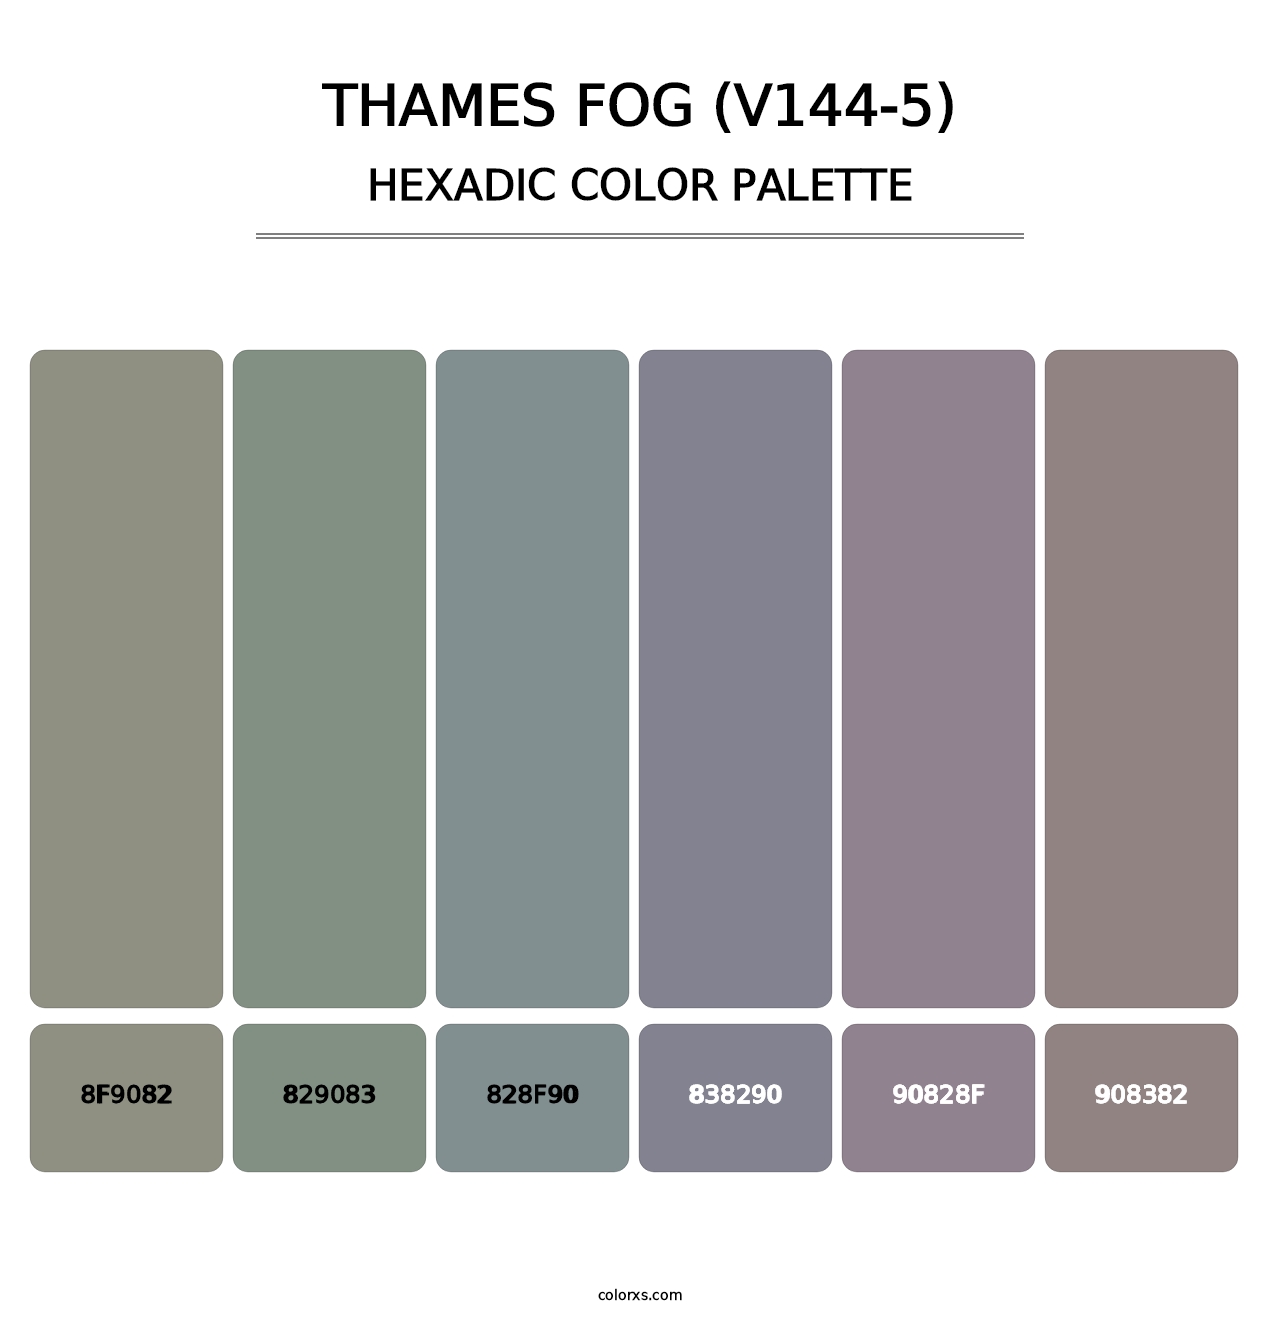 Thames Fog (V144-5) - Hexadic Color Palette